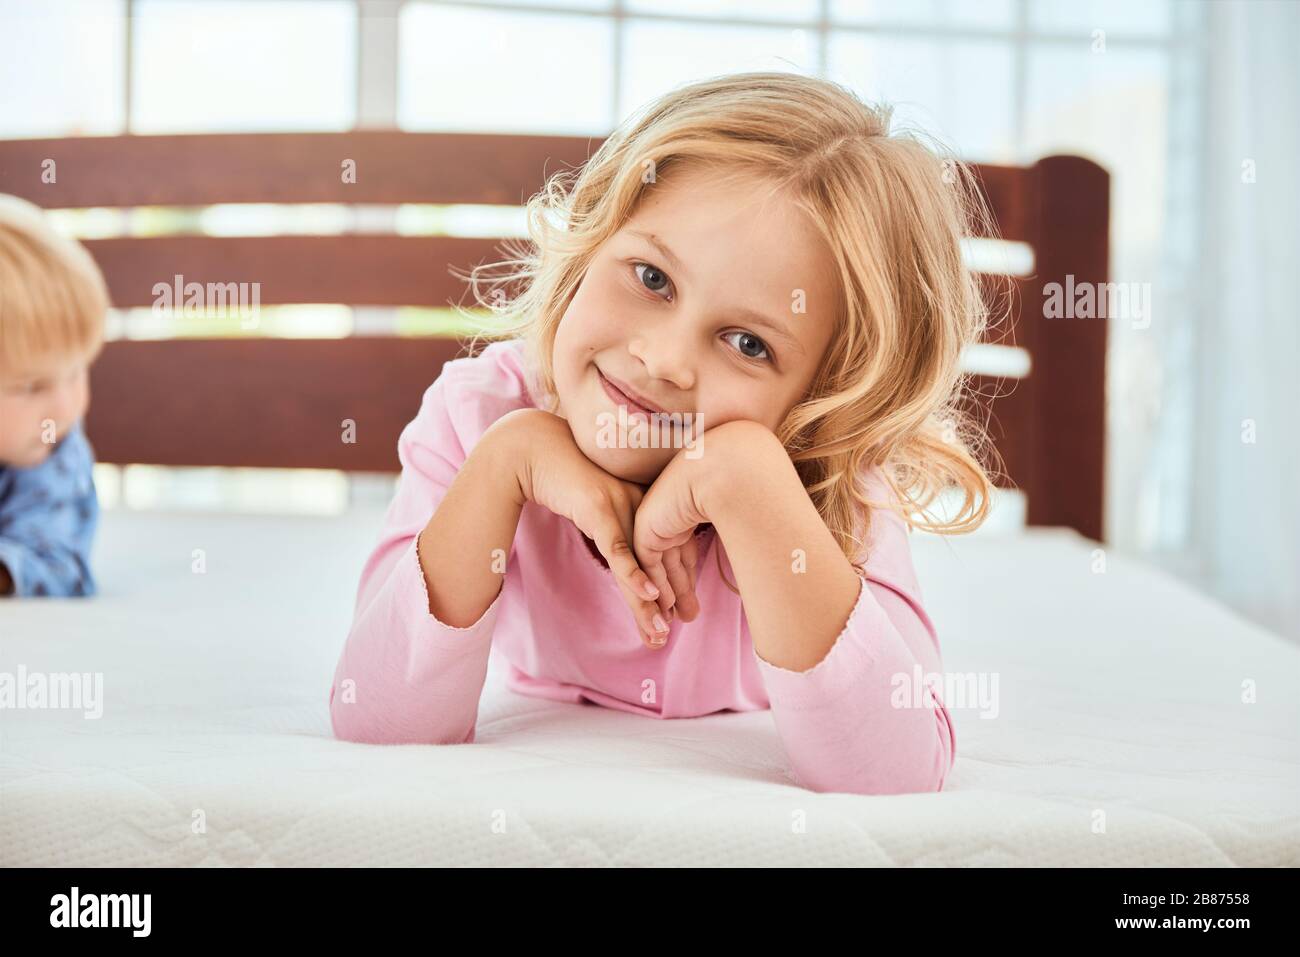 Portrait eines niedlichen kleinen Mädchens in pinkfarbenem Pajama, das mit der Kamera lächelt, während sie mit ihrem Bruder auf einer großen und weichen weißen bequemen Matratze liegt. Quarantäne. Schlafzimmer. Familie Stockfoto